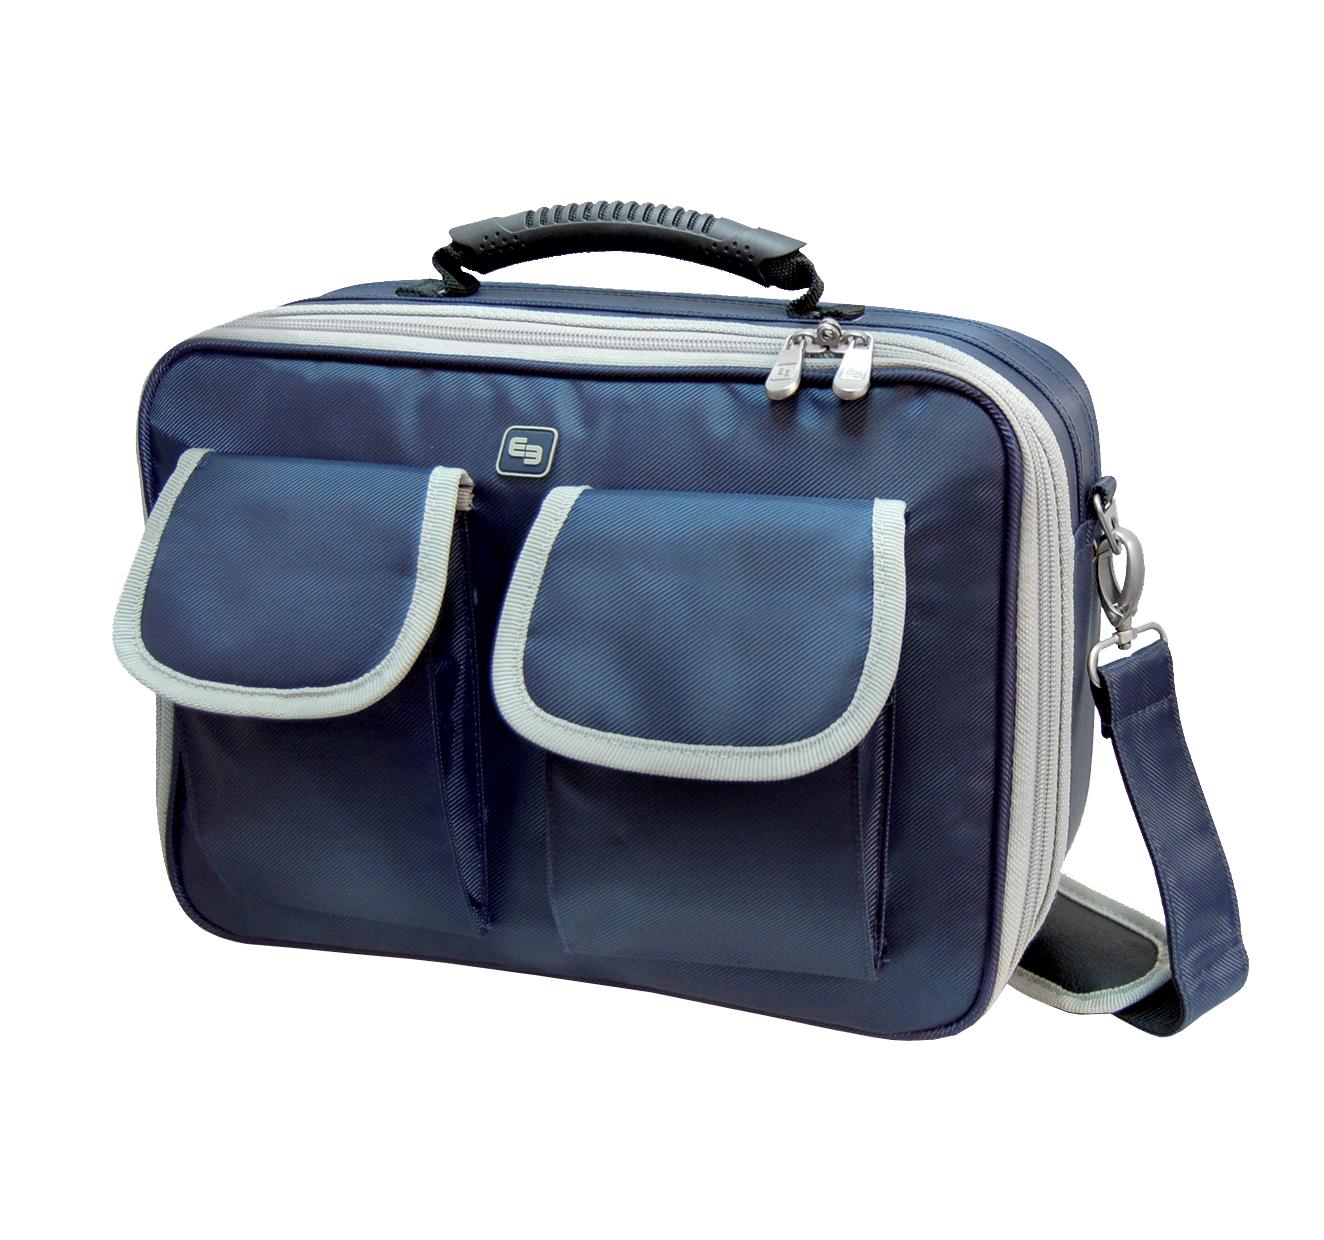 Plecaki, torby i walizki medyczne Elite Bags Community's EB01.003  (EB 136)